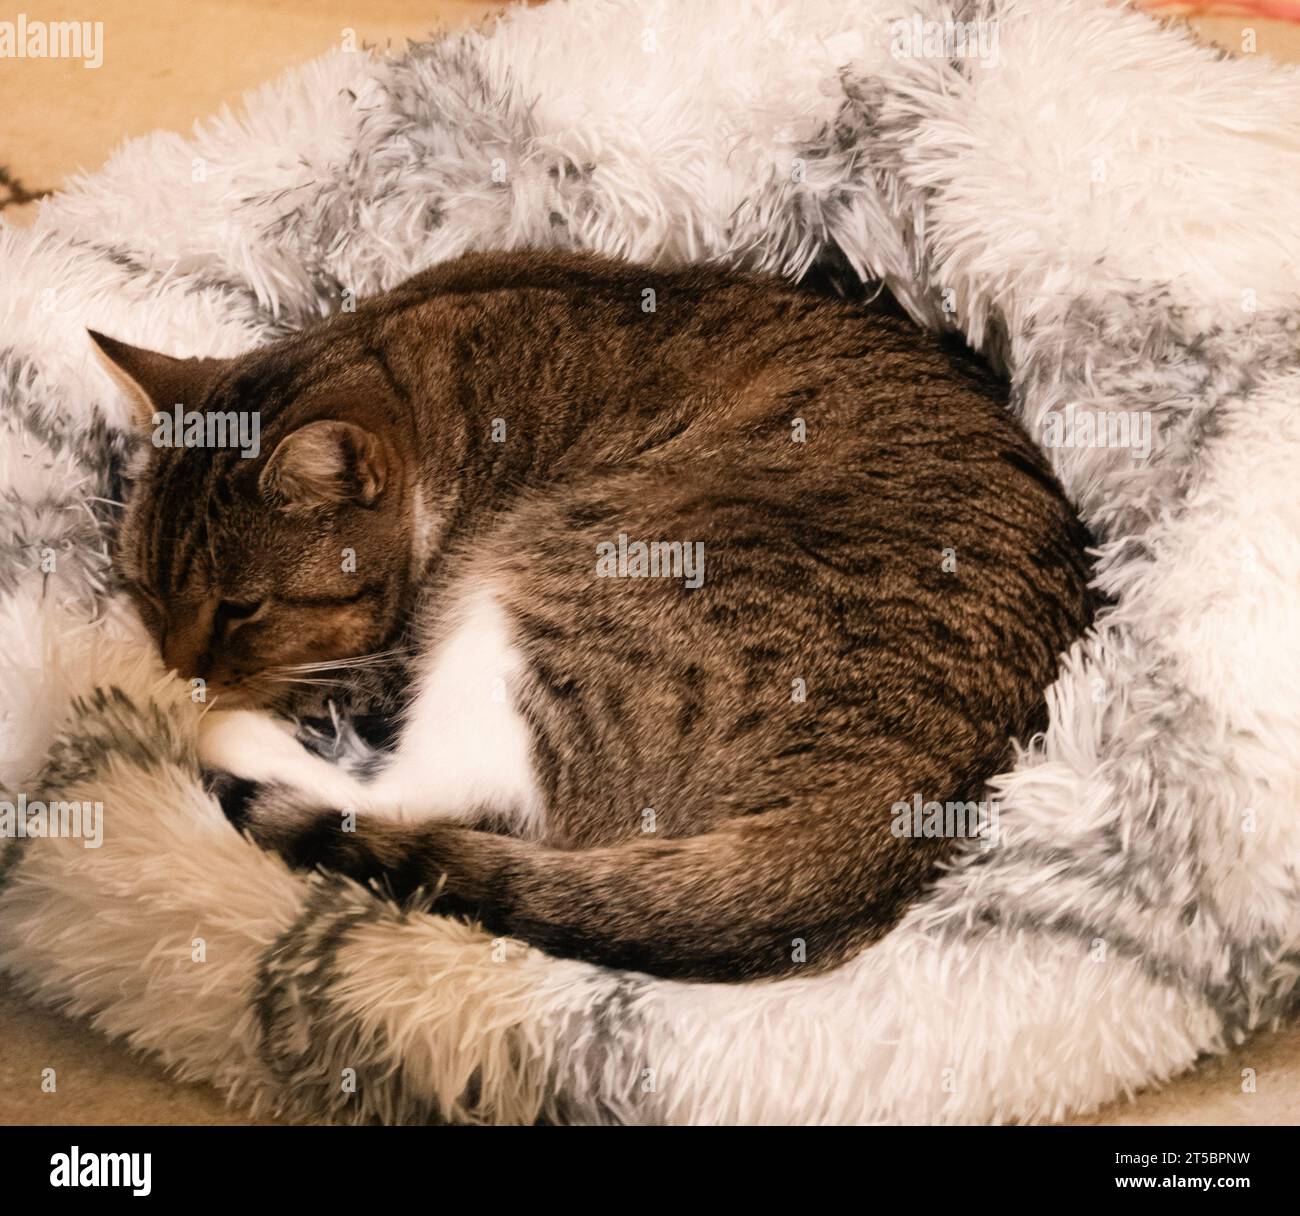 Gato doméstico de pelo corto, acostado en su cama de gato blanco y gris, tomando una siesta de gato. Foto de stock